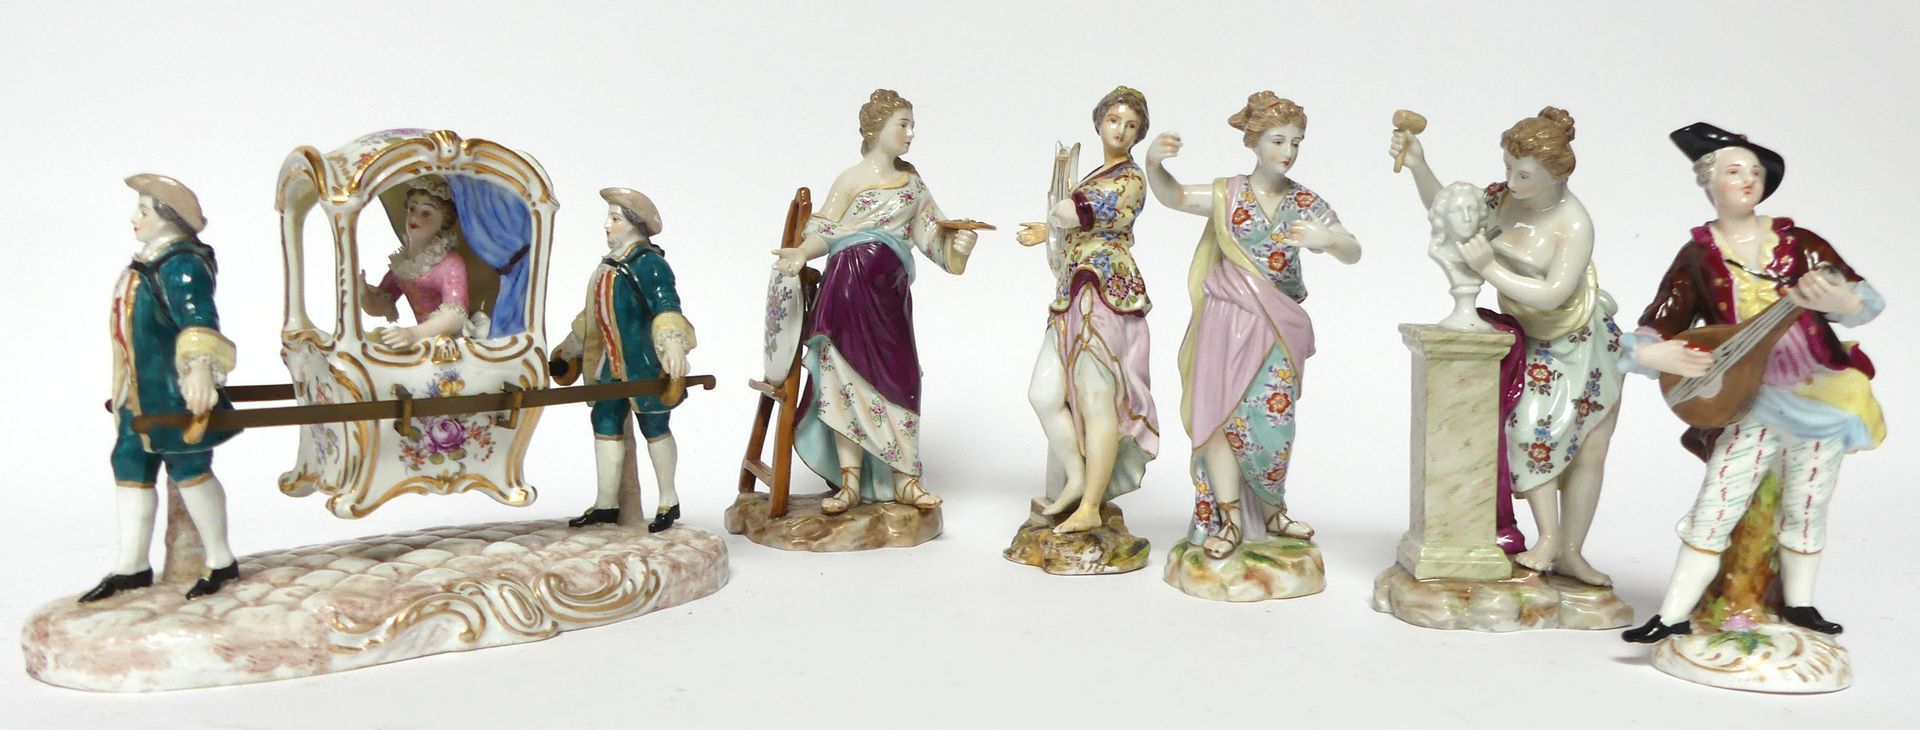 Null 一套四件迈森或德累斯顿多色珐琅彩瓷器SUJETS在18世纪的品味，描绘了艺术的寓意。高18厘米。附有迈森风味的瓷椅和音乐家的SUJET。